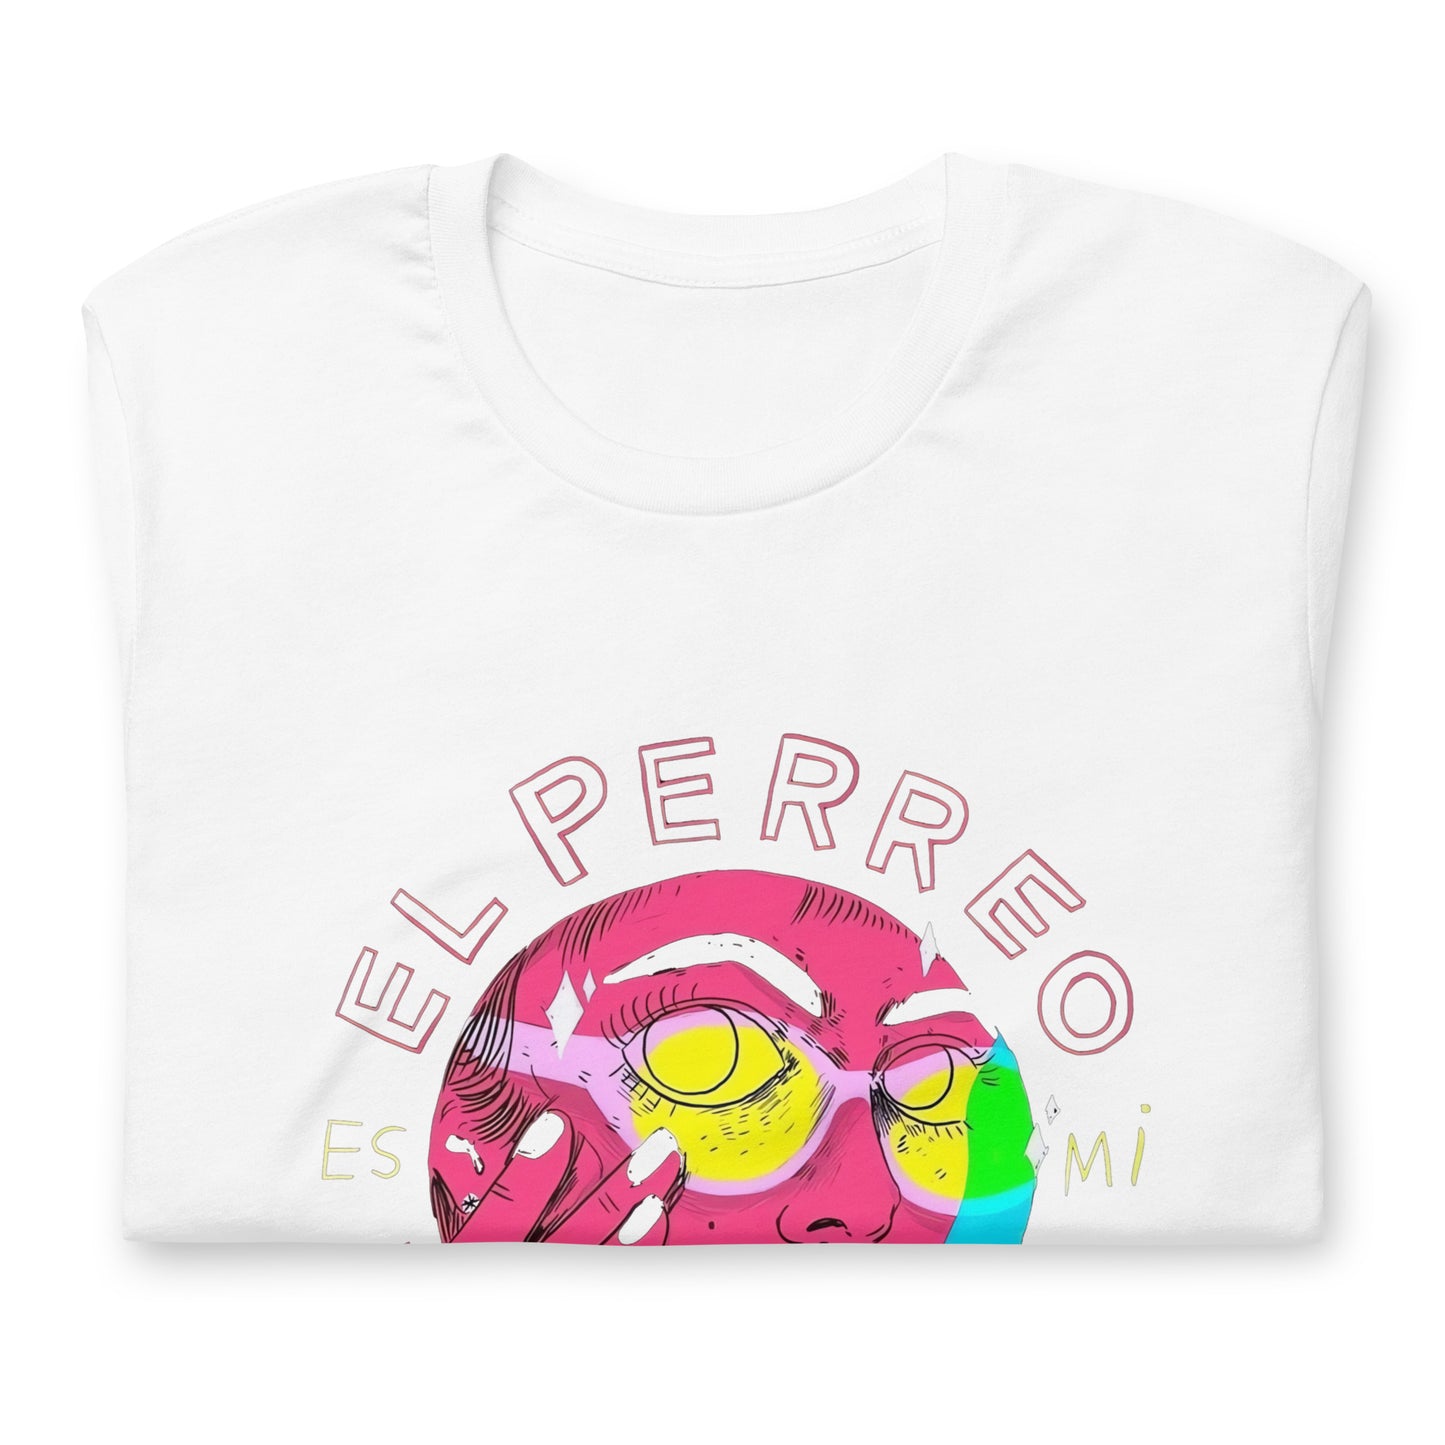 Camiseta El Perreo es su profesión: Descubre calidad excepcional y estampados duraderos. Encuentra estilo y orgullo en cada prenda.